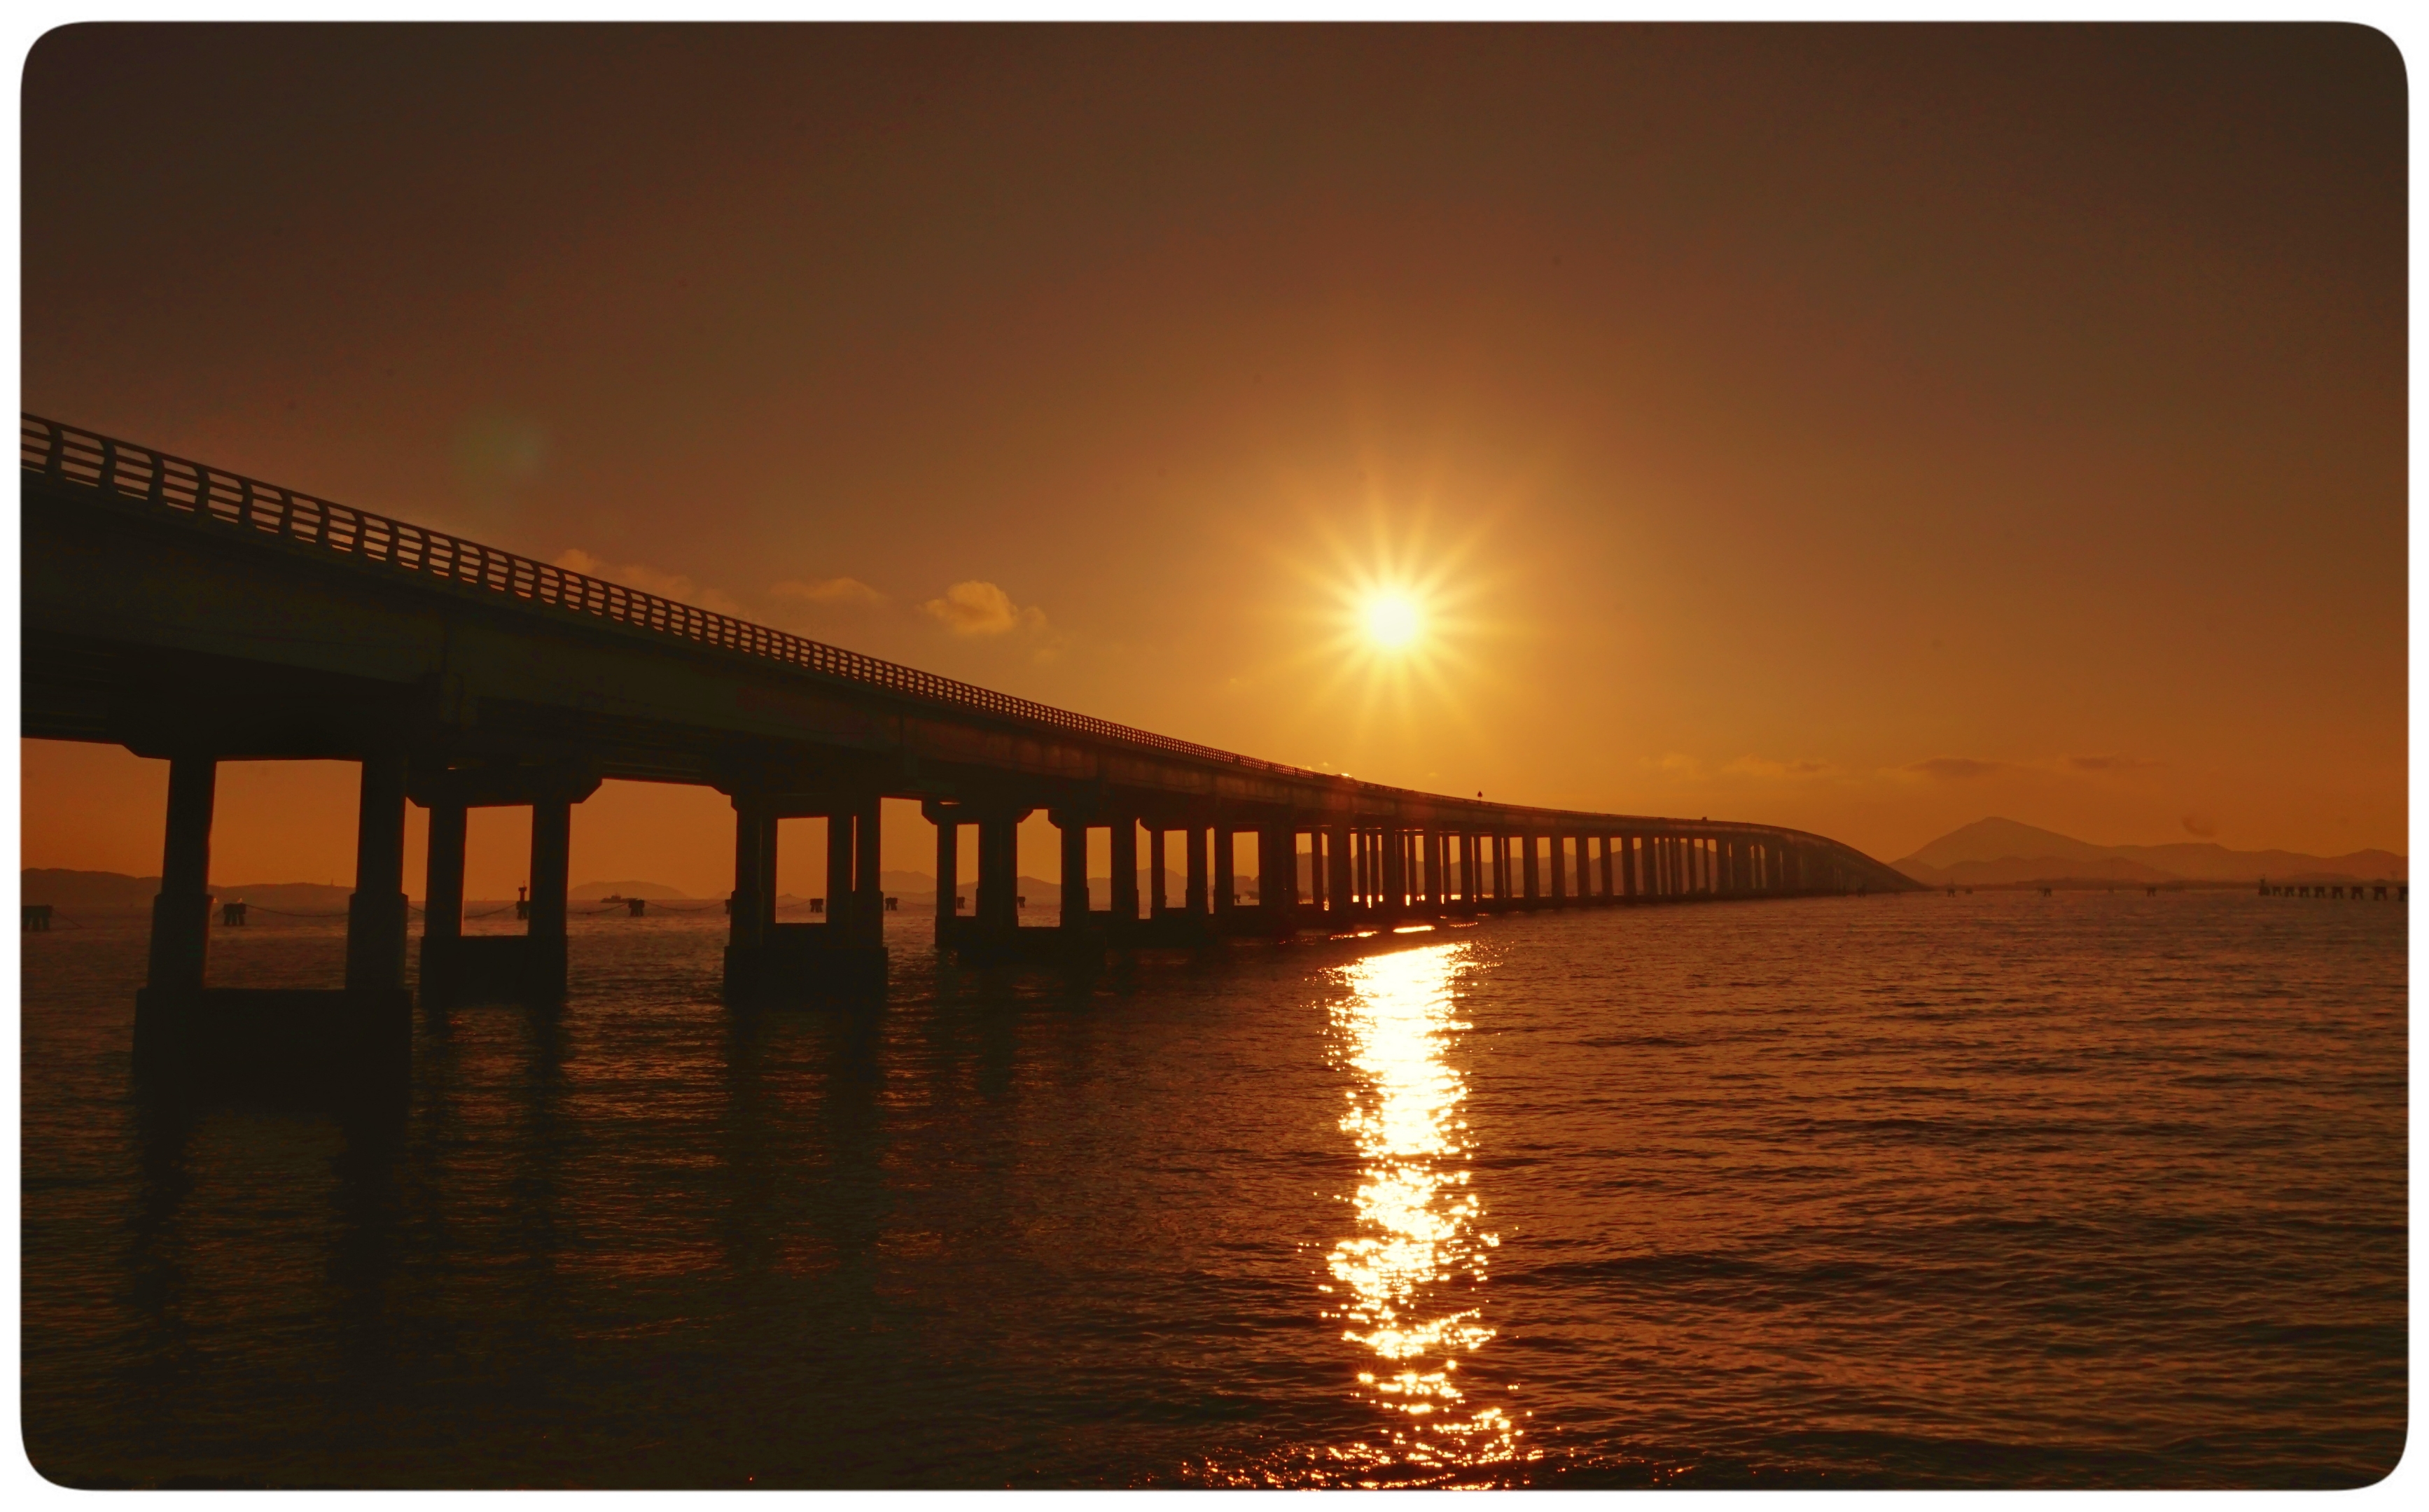 舟山朱家尖海峡大桥的日出美